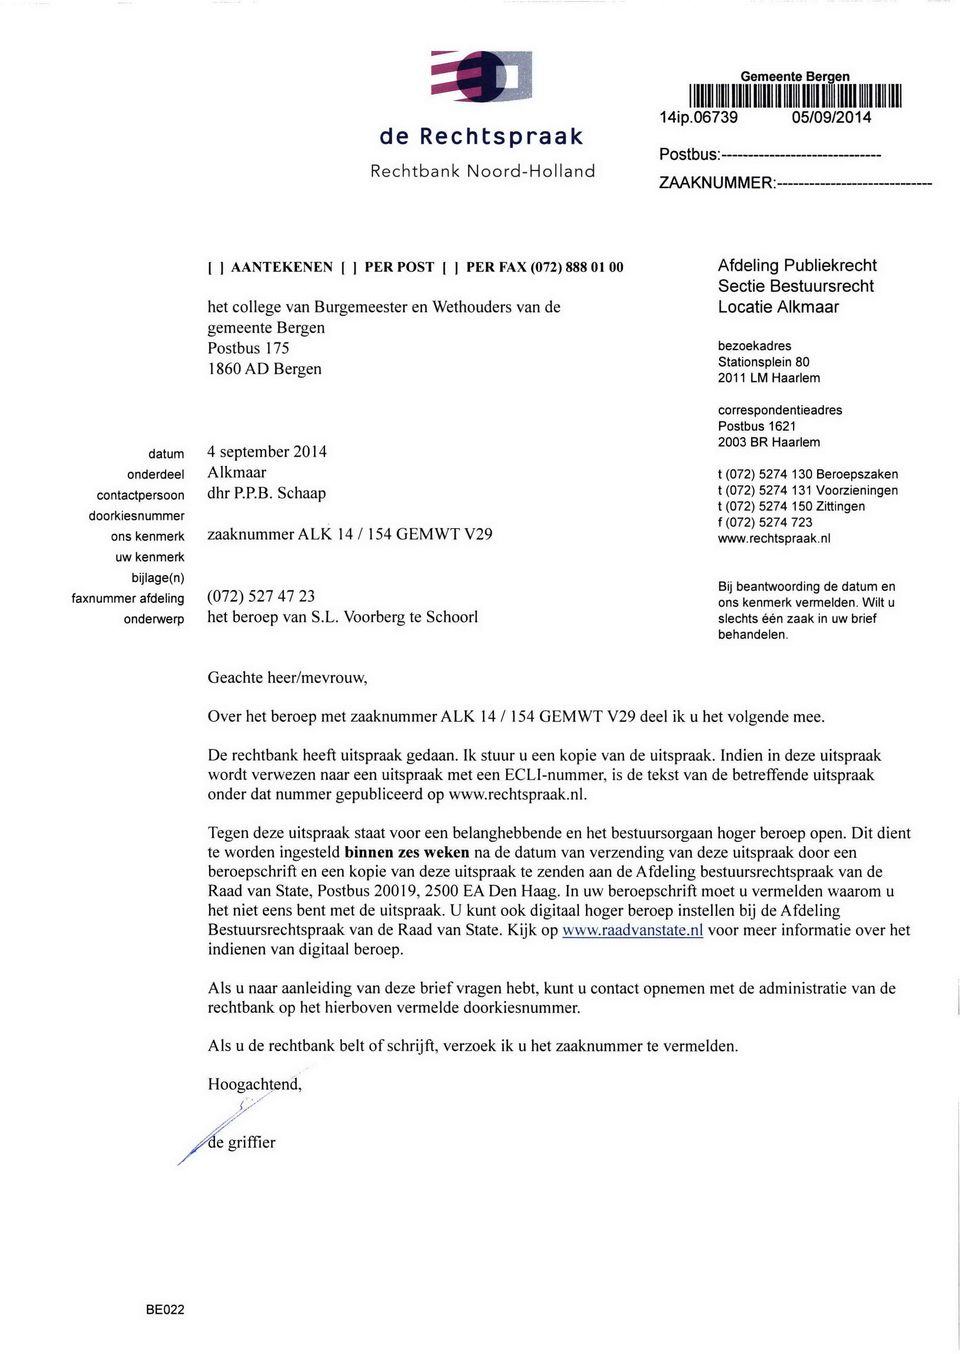 Bergen datum 4 september 2014 Alkmaar dhr P.P.B. Schaap onderdeel contactpersoon doorkiesnummer ons kenmerk uw kenmerk bijlage(n) faxnummer afdeling (072) 527 47 23 onderwerp zaaknummer ALK 14 I 154 GEMWT V29 het beroep van S.